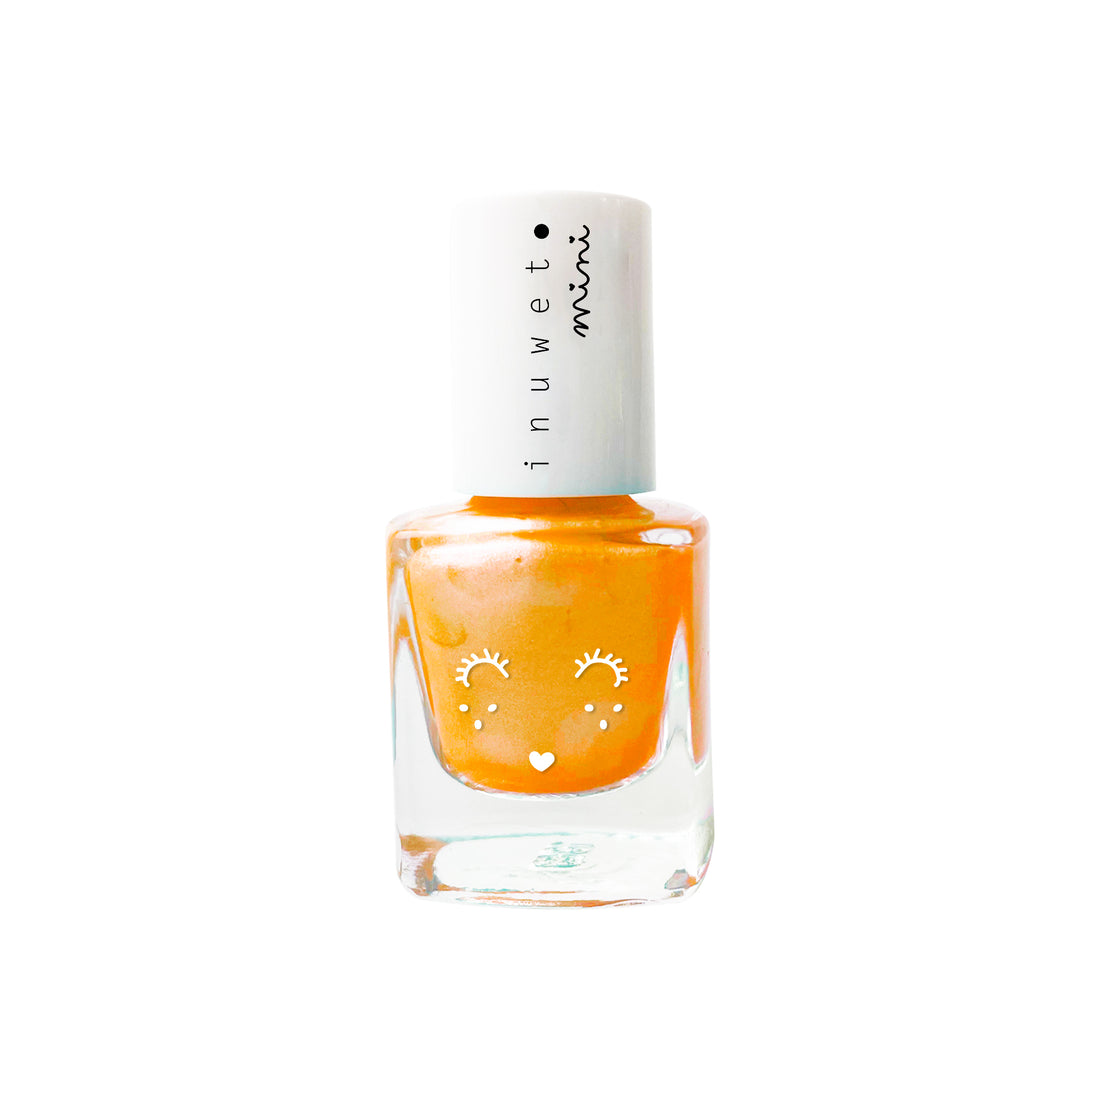 inuwet-neon-orange-mango-scent-for-kids-inuw-vinkv16